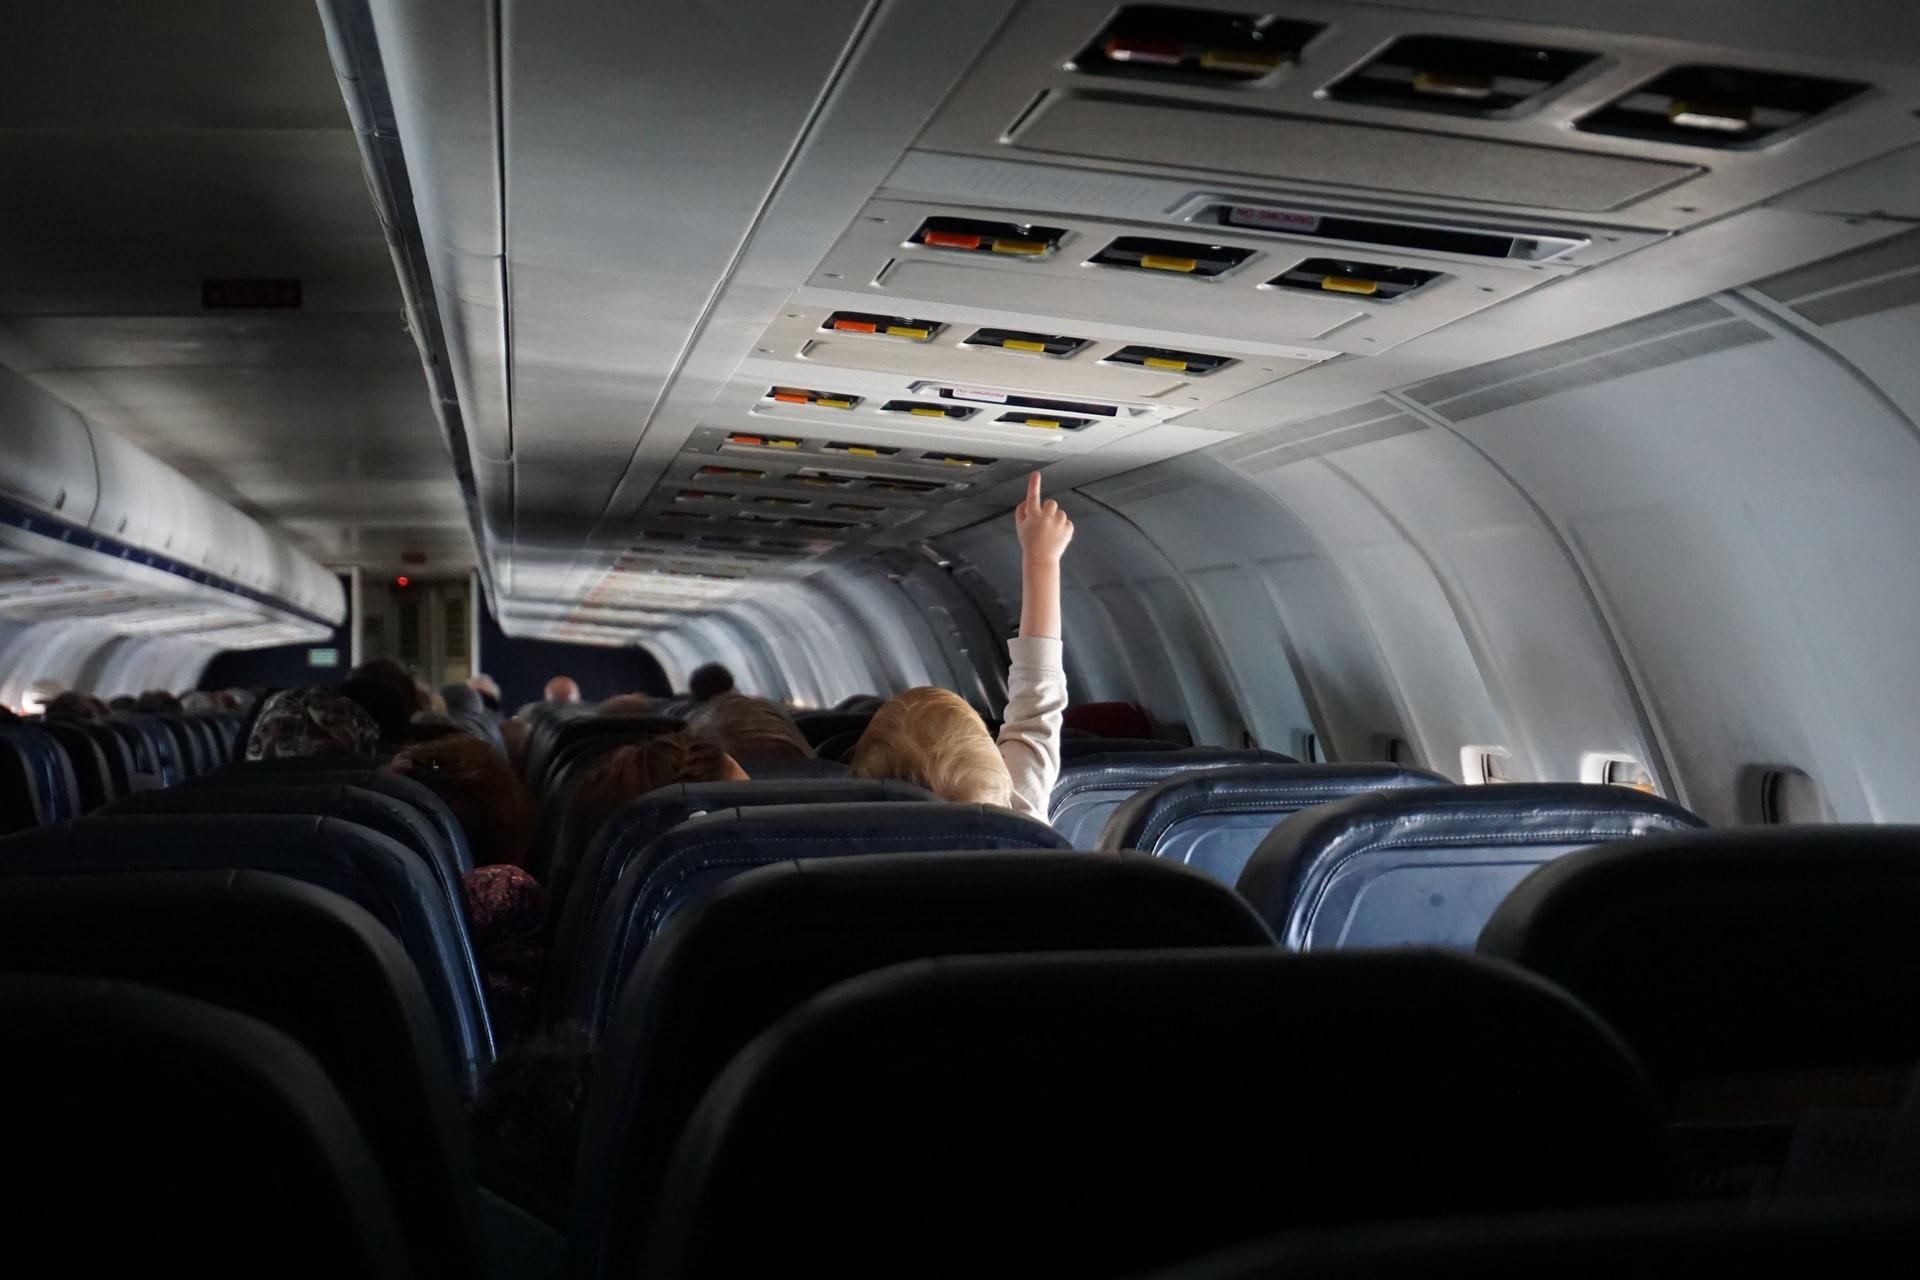 Стюардесса показала самые грязные места в самолете, которые не дезинфицируют: видео